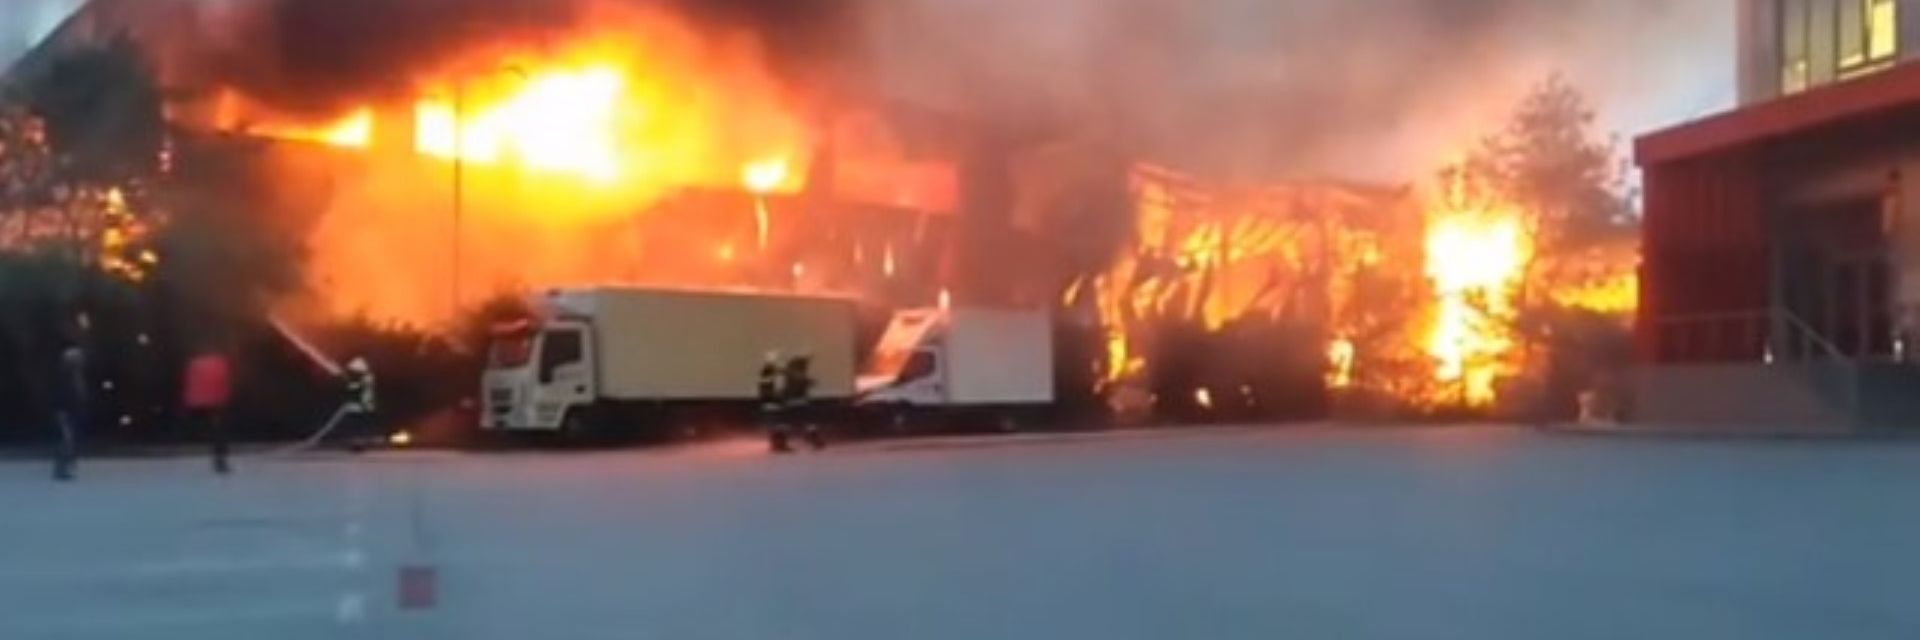 Голям пожар гори в склад на известна фирма в София (обновена)